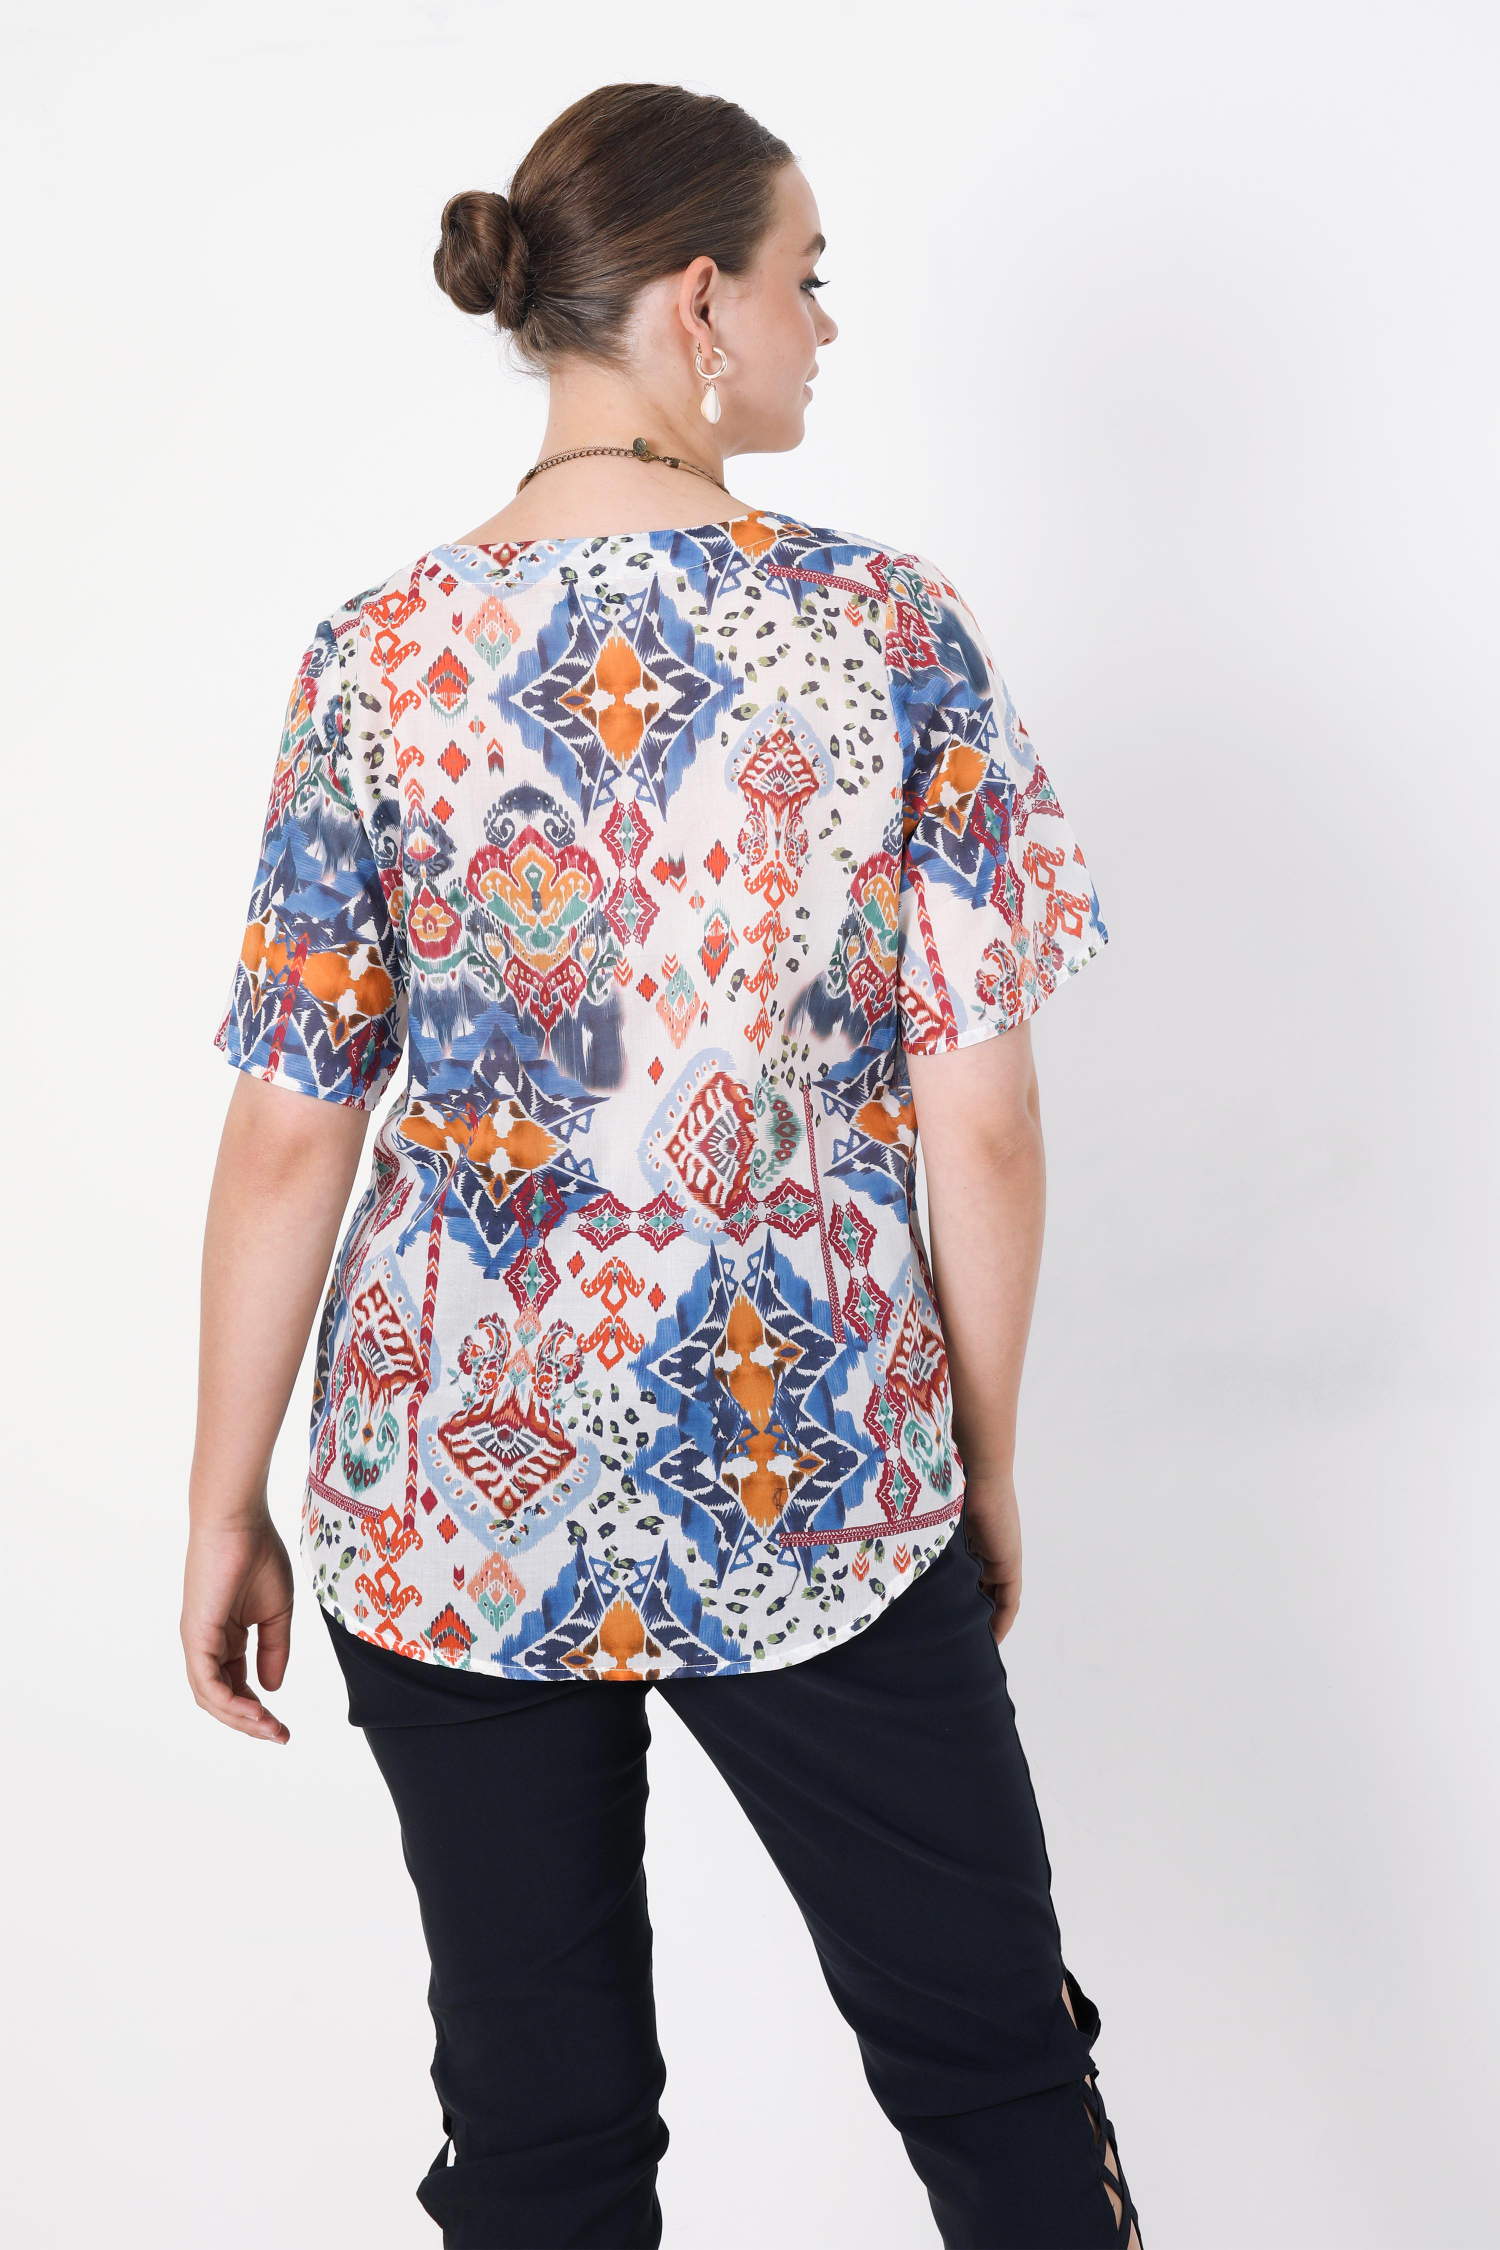 Printed blouse in eoko-tex fabric